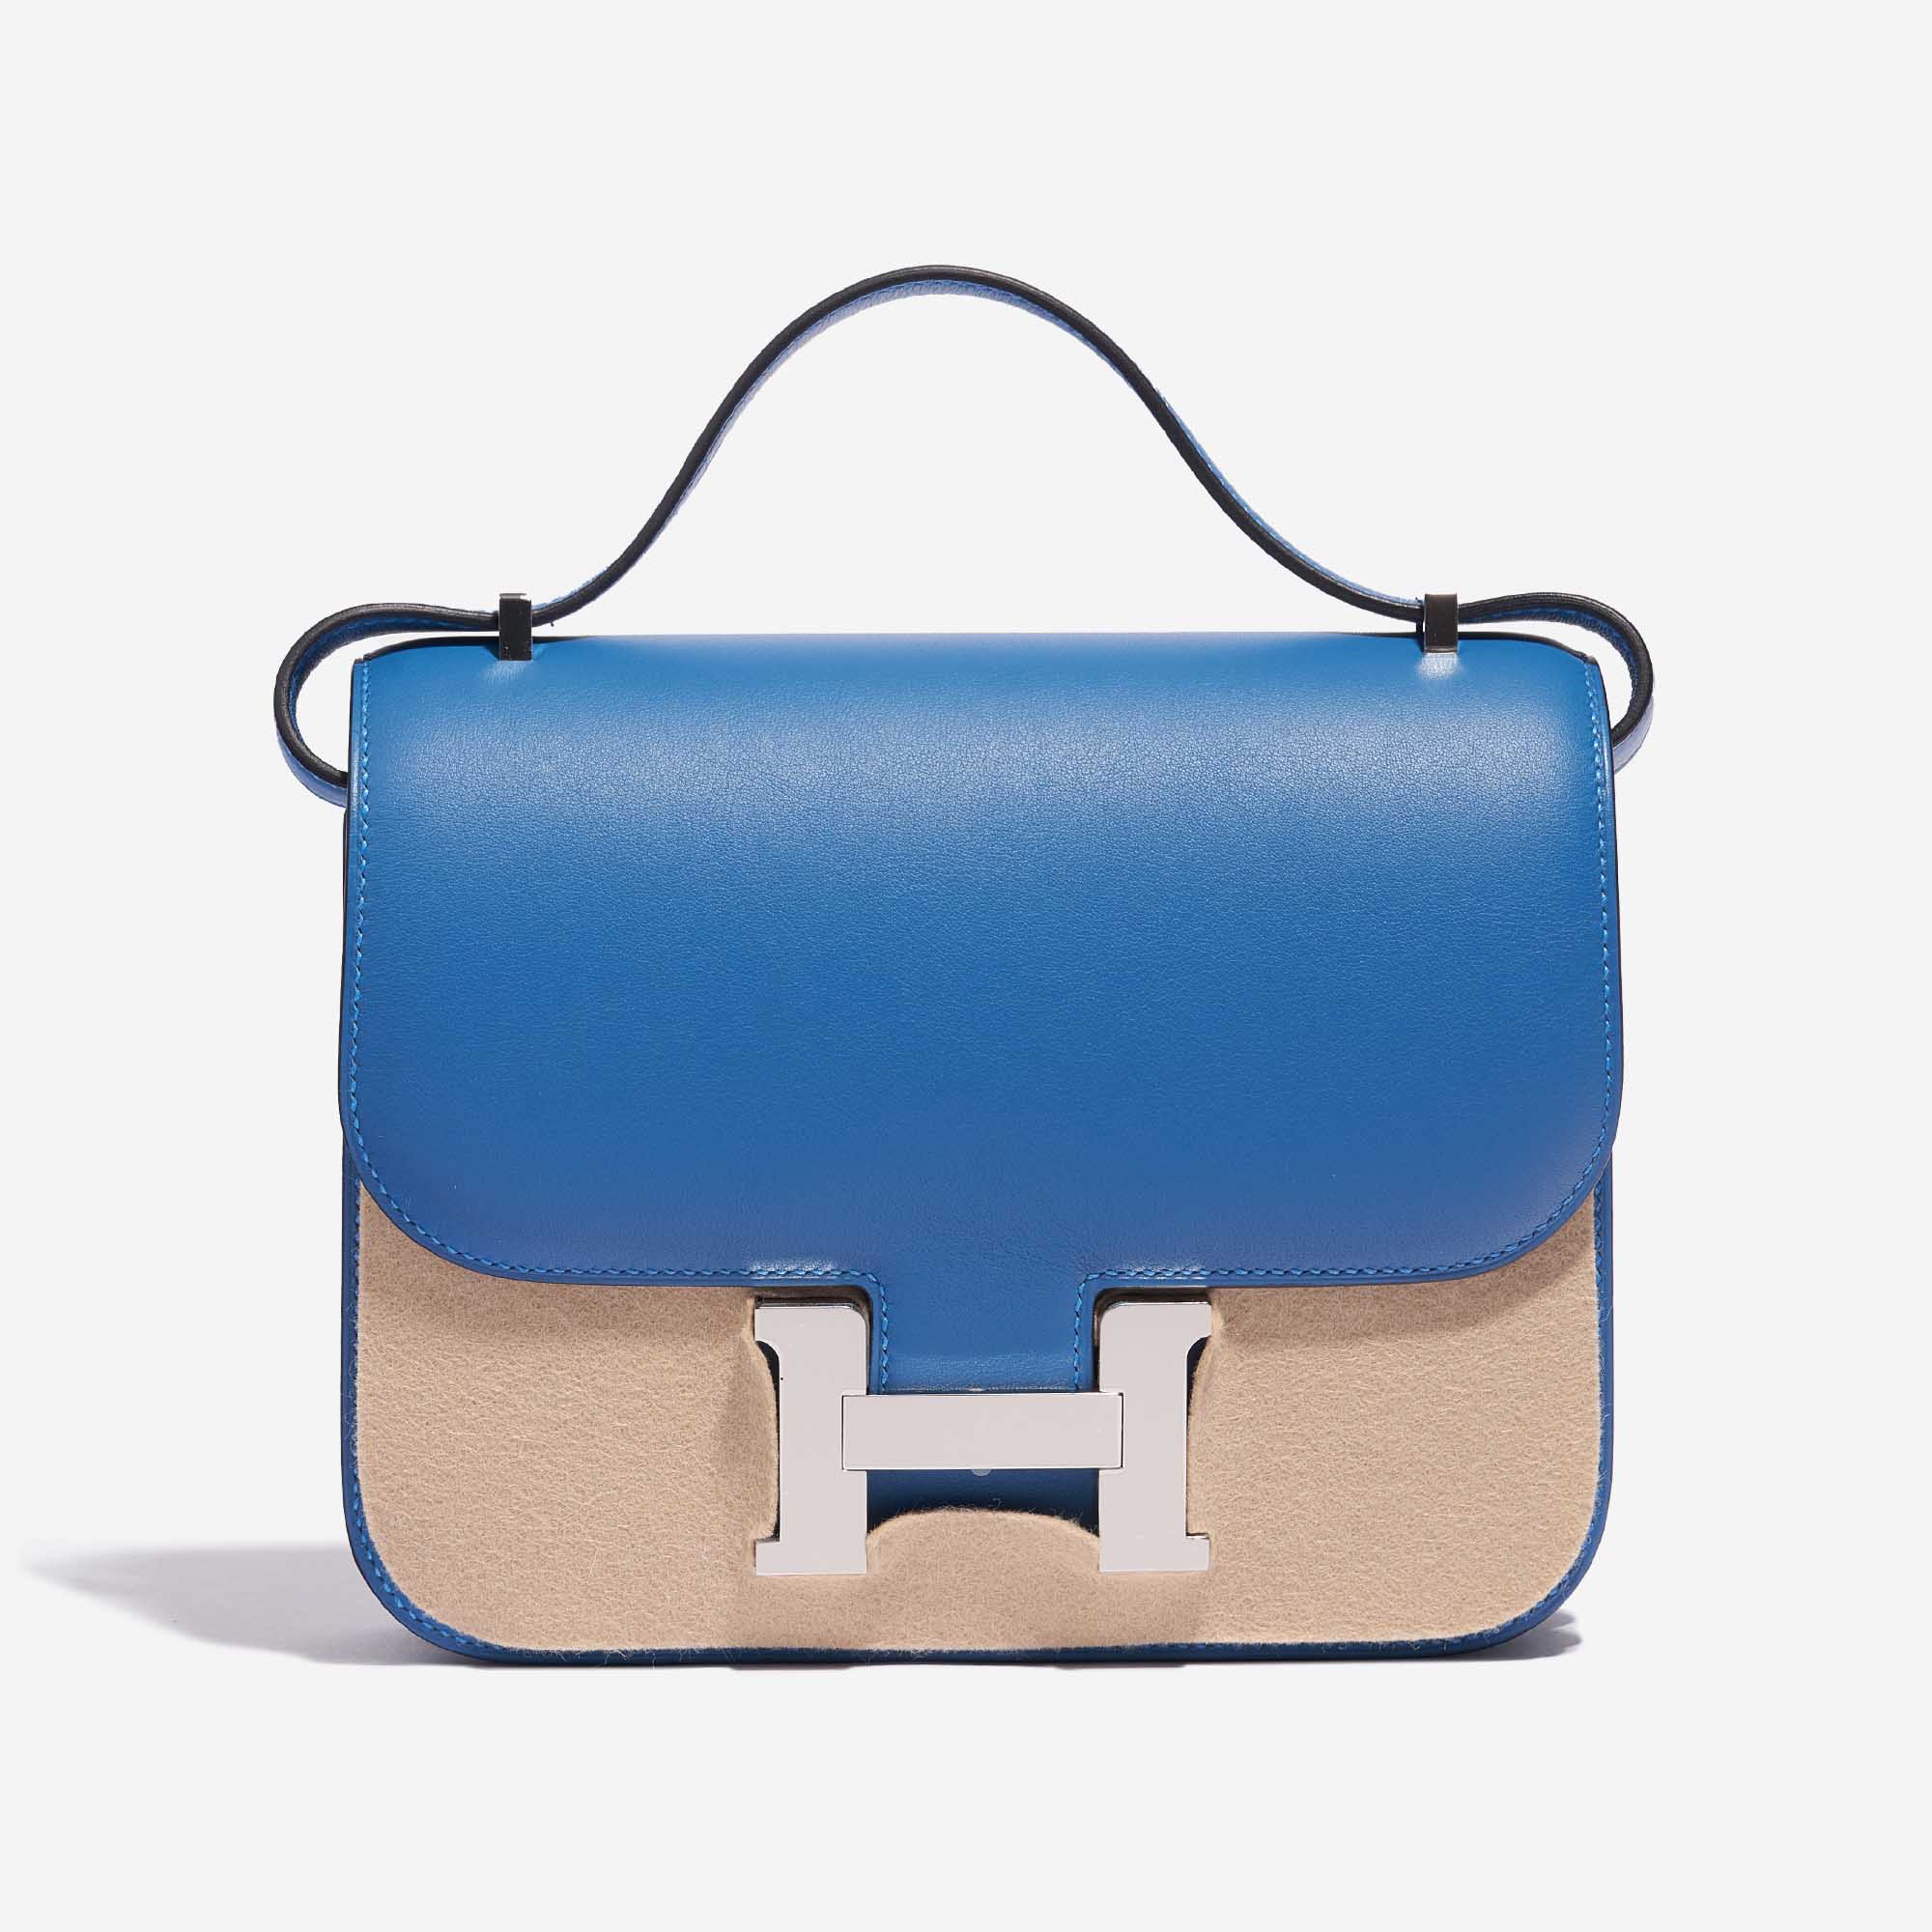 Gebrauchte Hermès Tasche Constance 18 Swift Blau Mykonos / Blau Encre Blau Front Velt | Verkaufen Sie Ihre Designer-Tasche auf Saclab.com